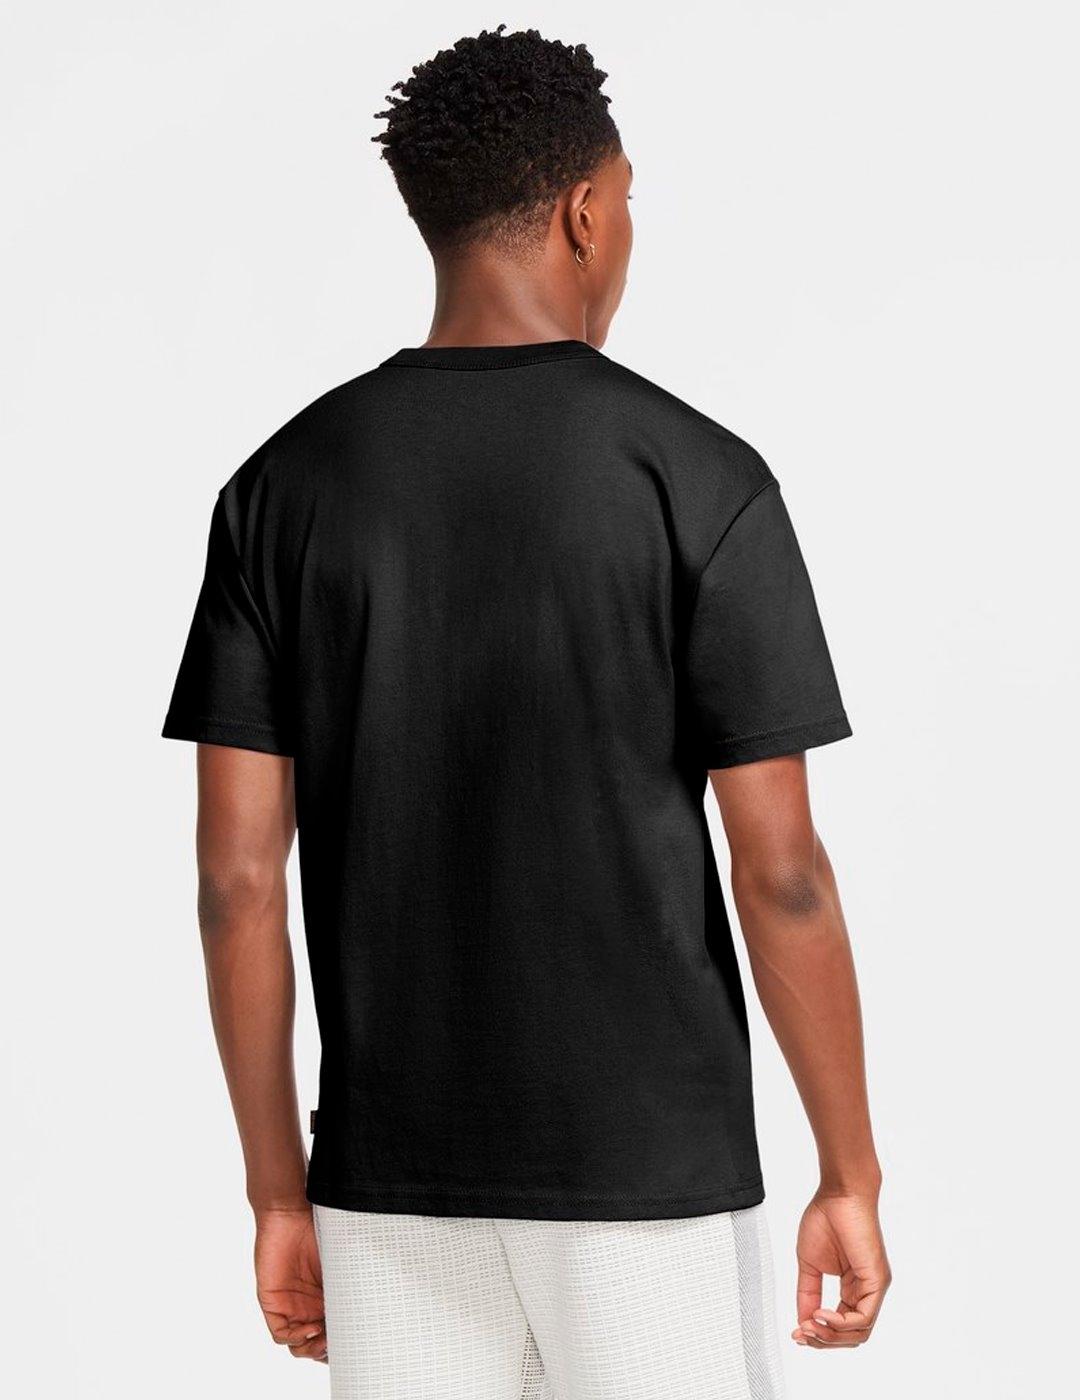 Camiseta Nike Premium Essentials